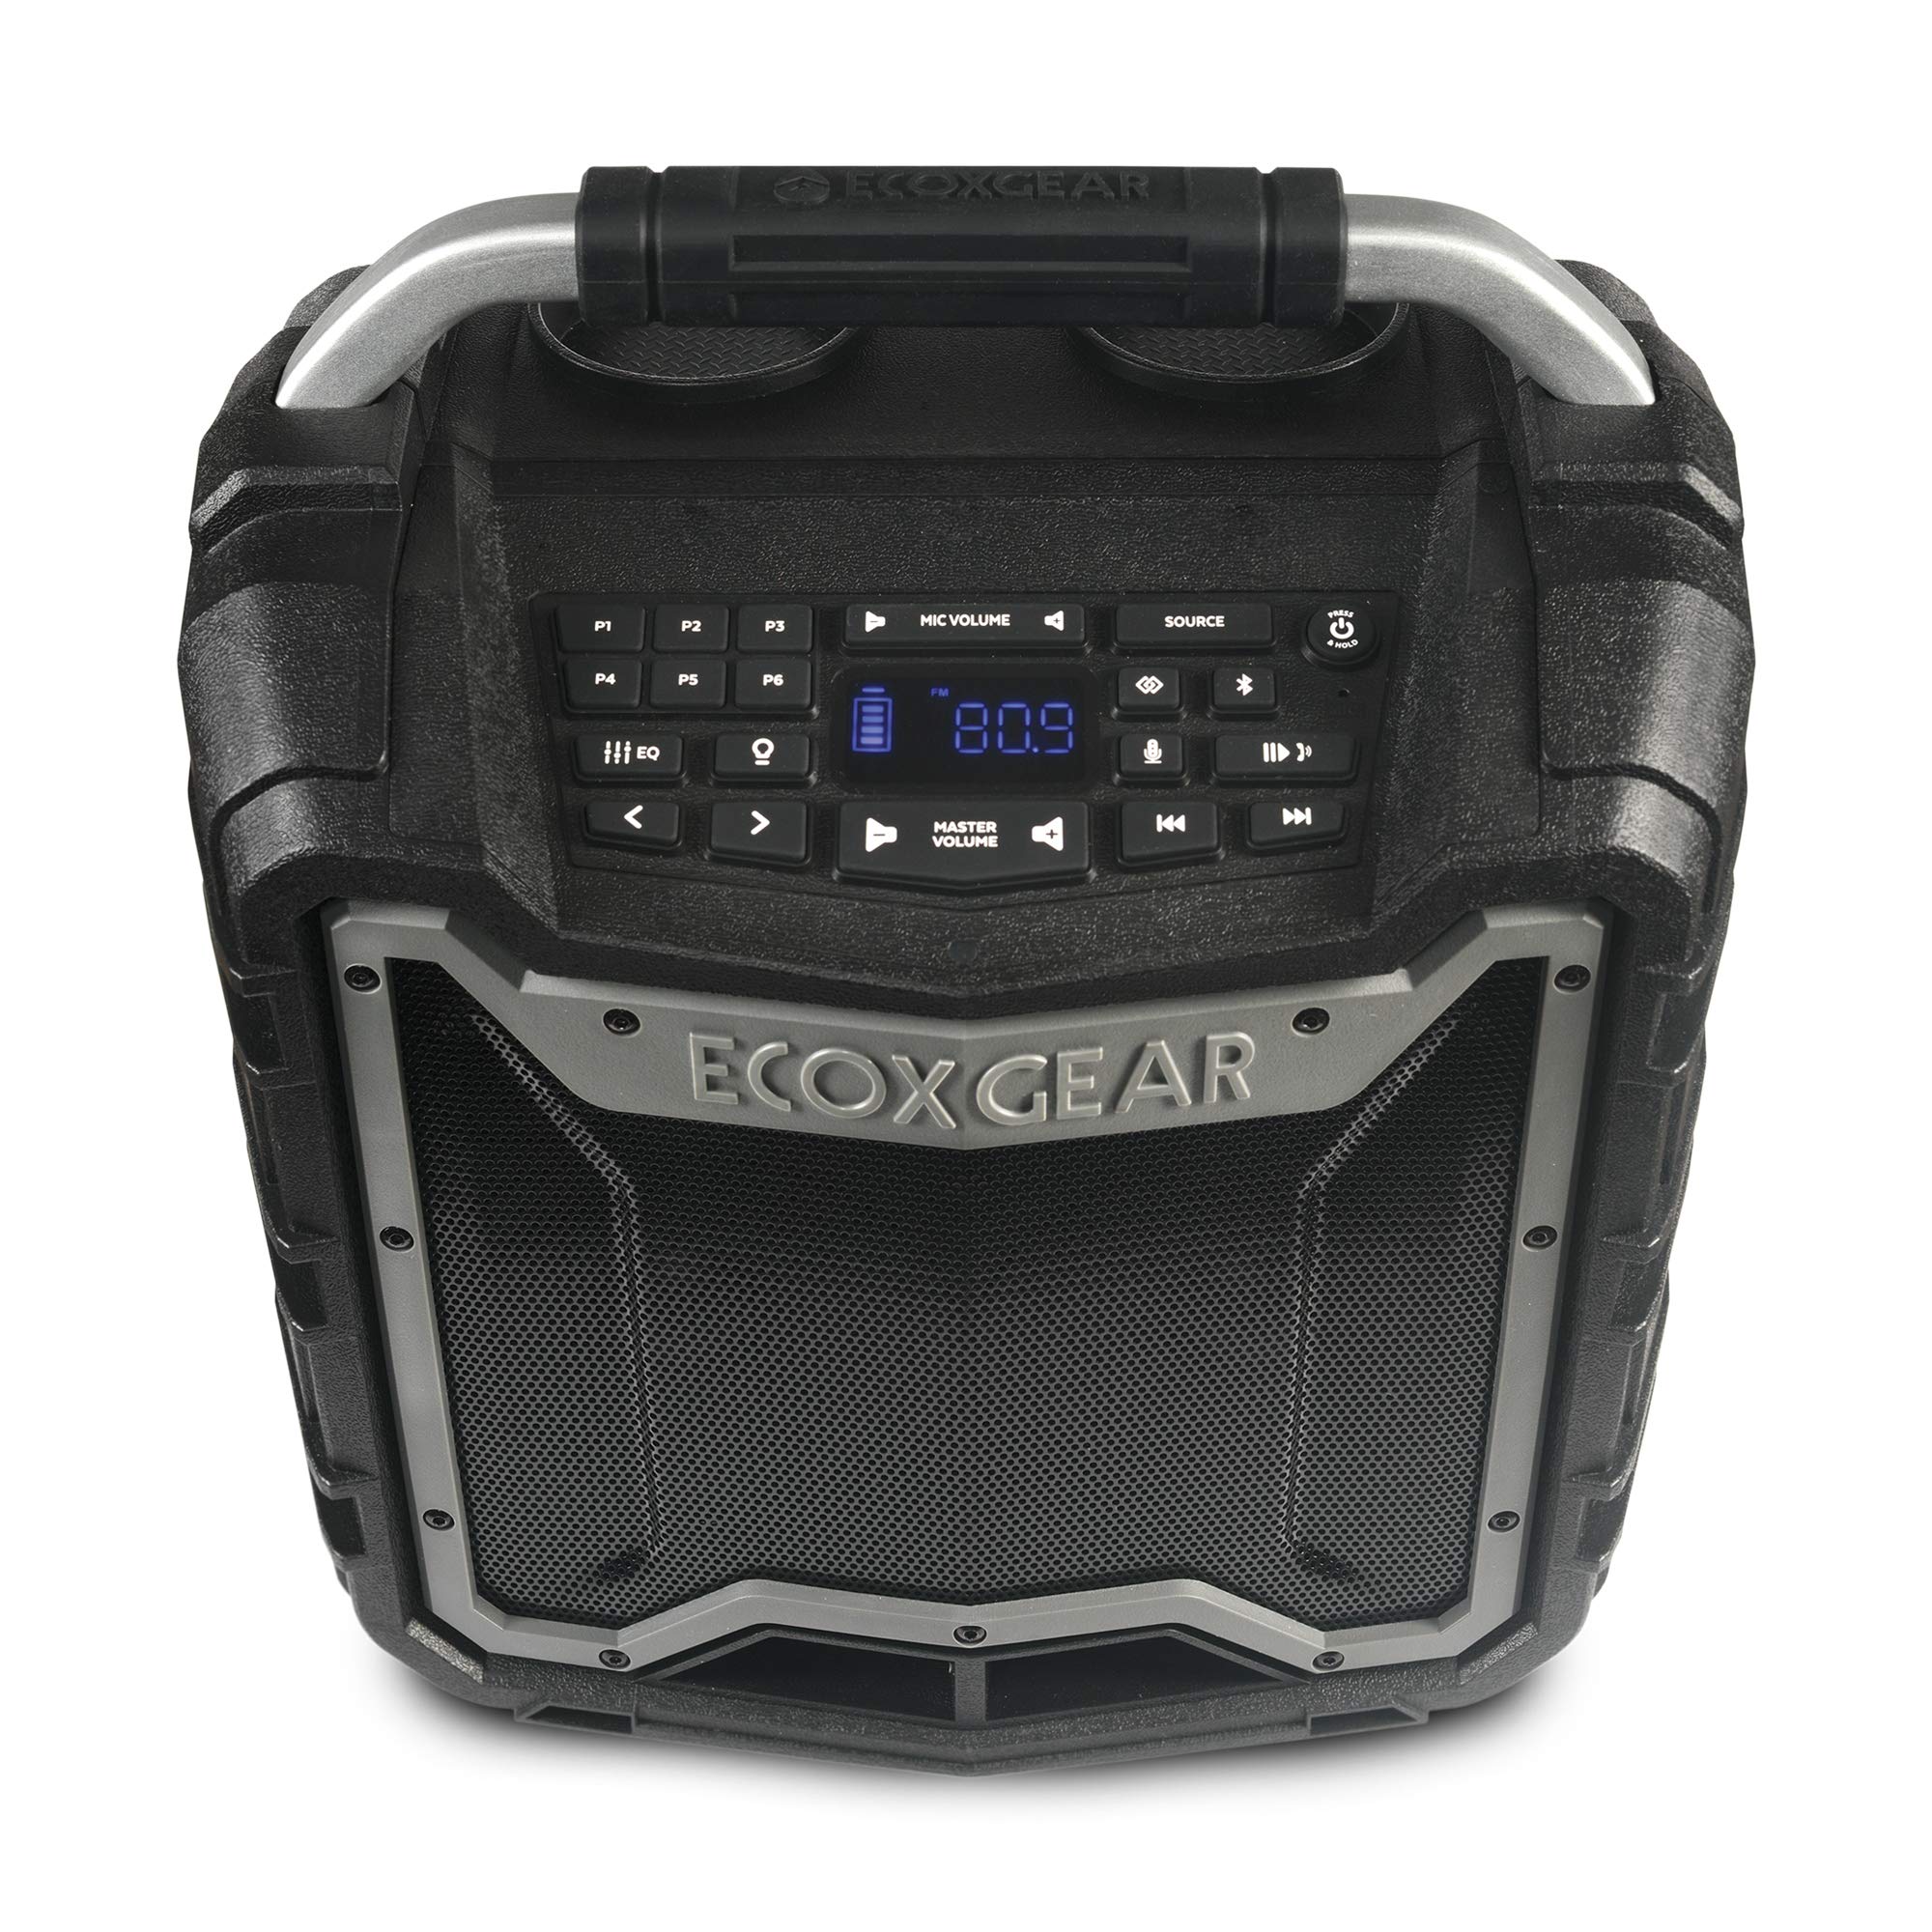 ECOXGEAR EcoTrek GDI-EXTRK210 Robusto à prova d'água flutuante portátil Bluetooth sem fio 100 Watts alto-falante inteligente e sistema de PA (cinza)